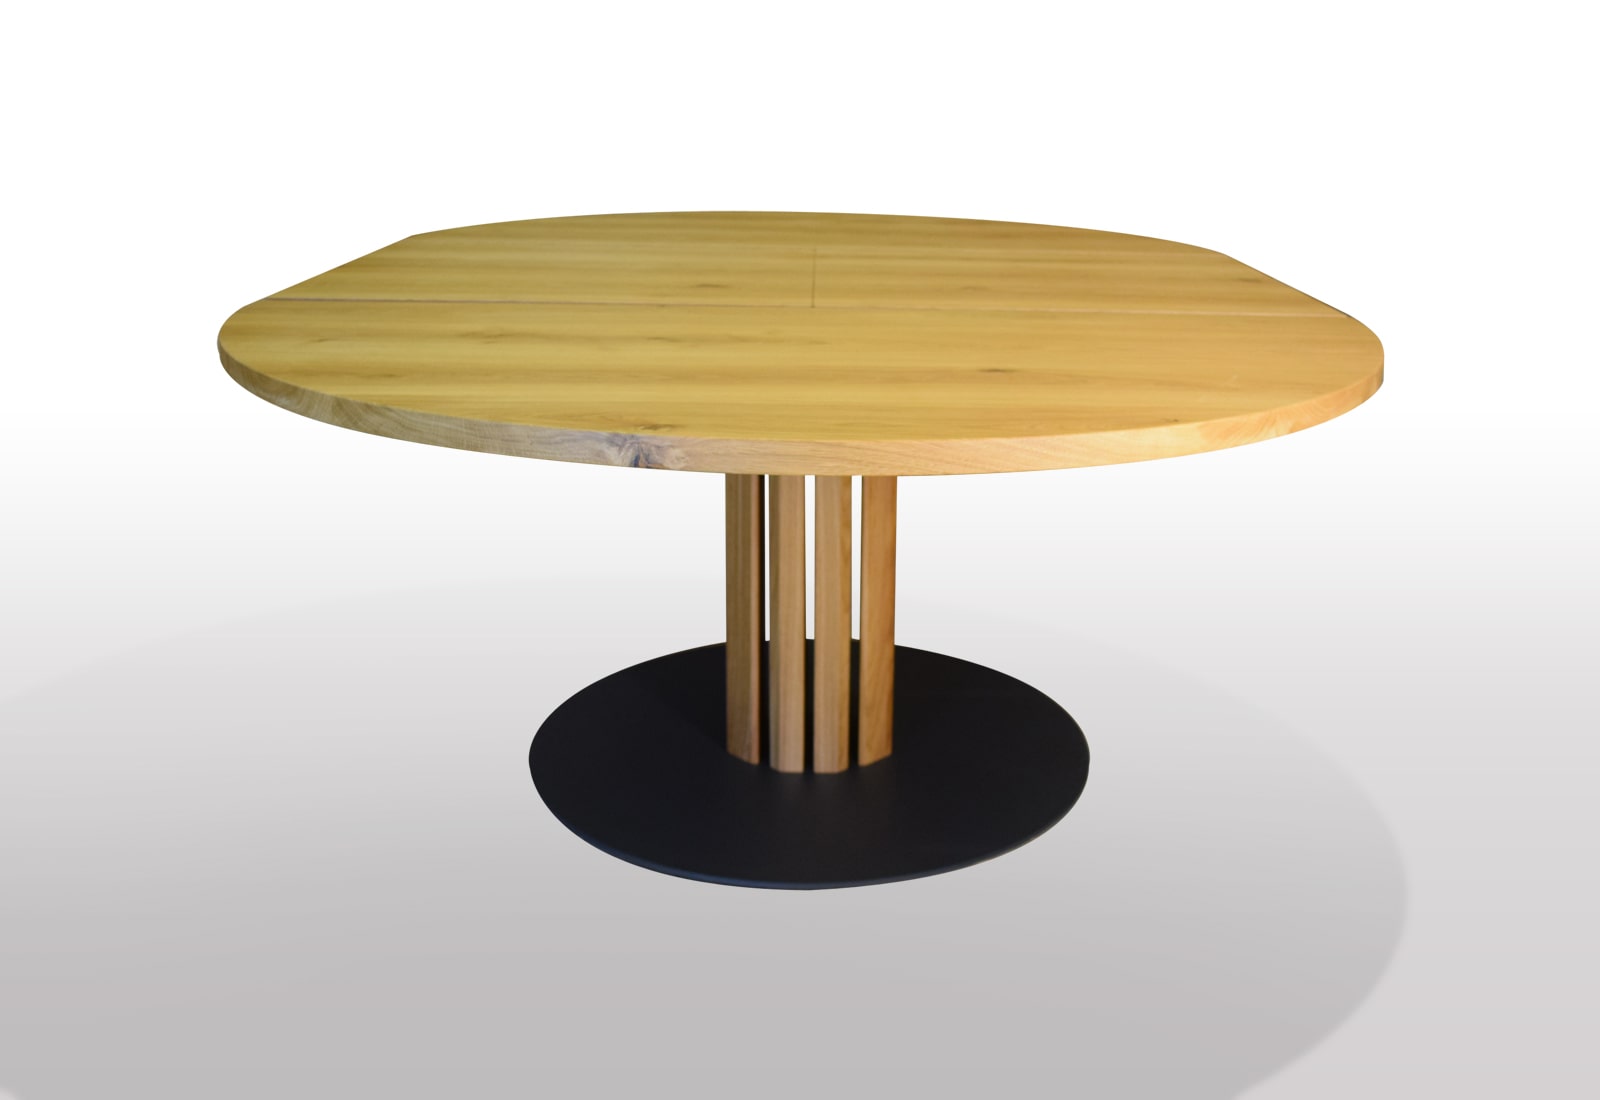 Tisch rund Eiche massiv ausziehbar in 120cm Durchmesser | Tischmoebel.de